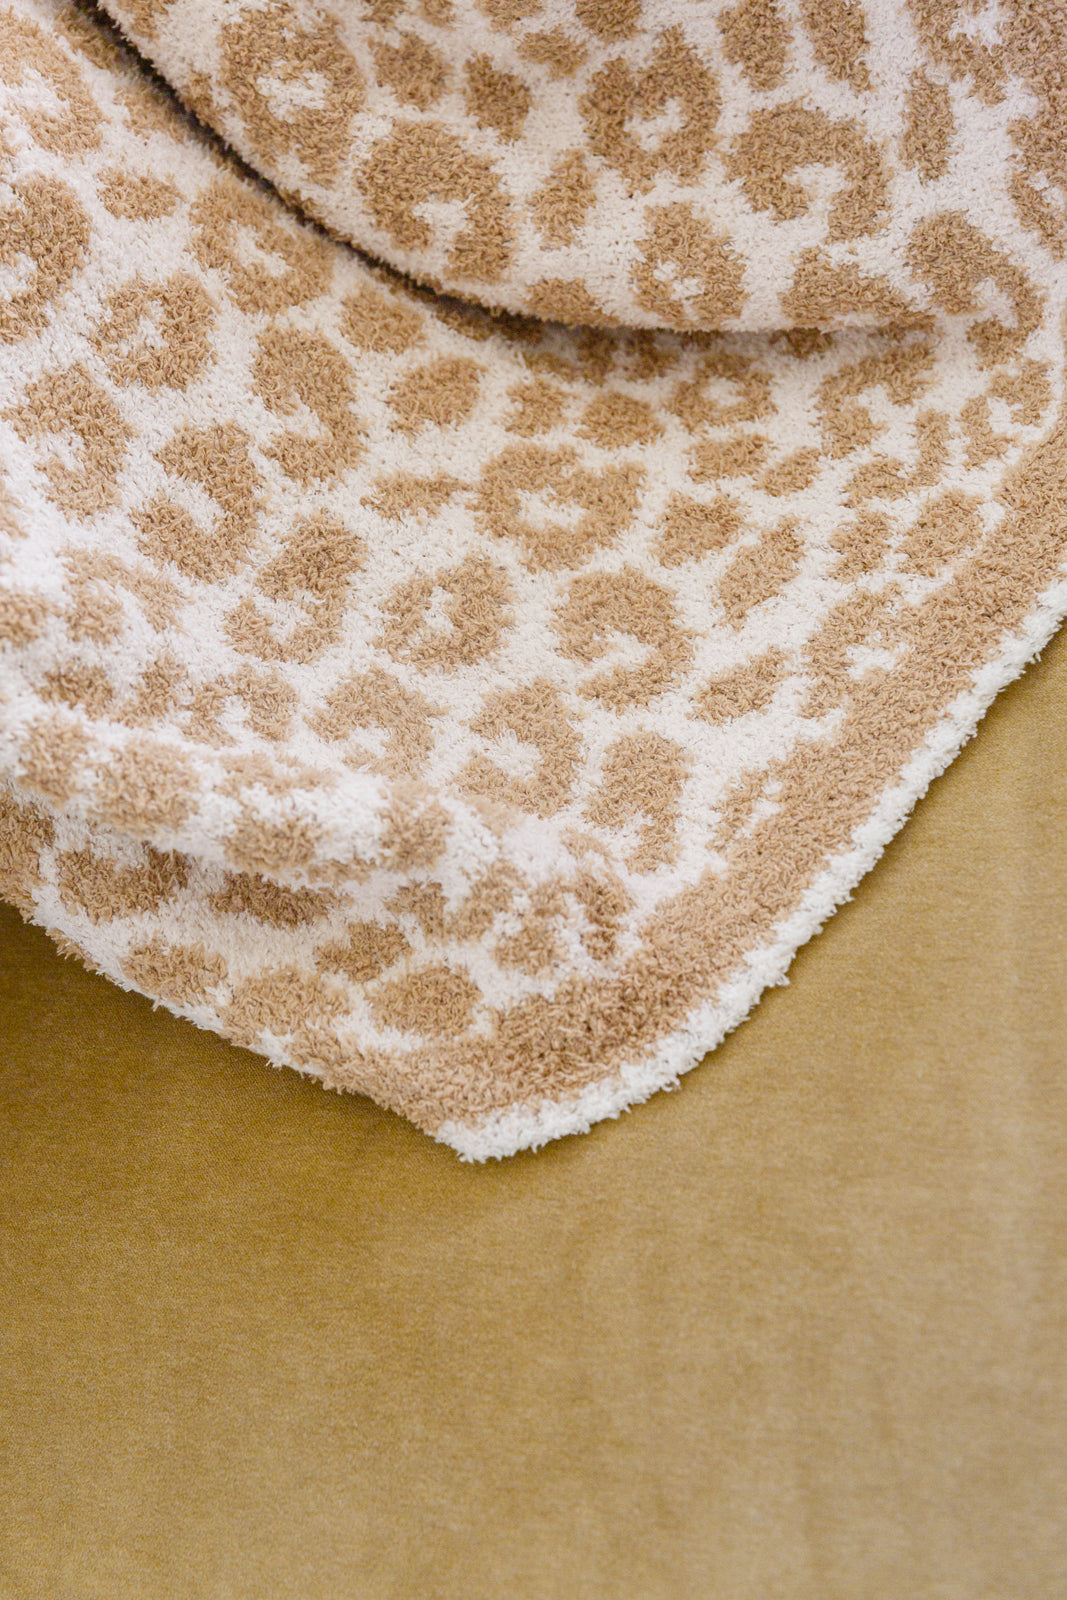 Fuzzy Feeling Blanket In Tan